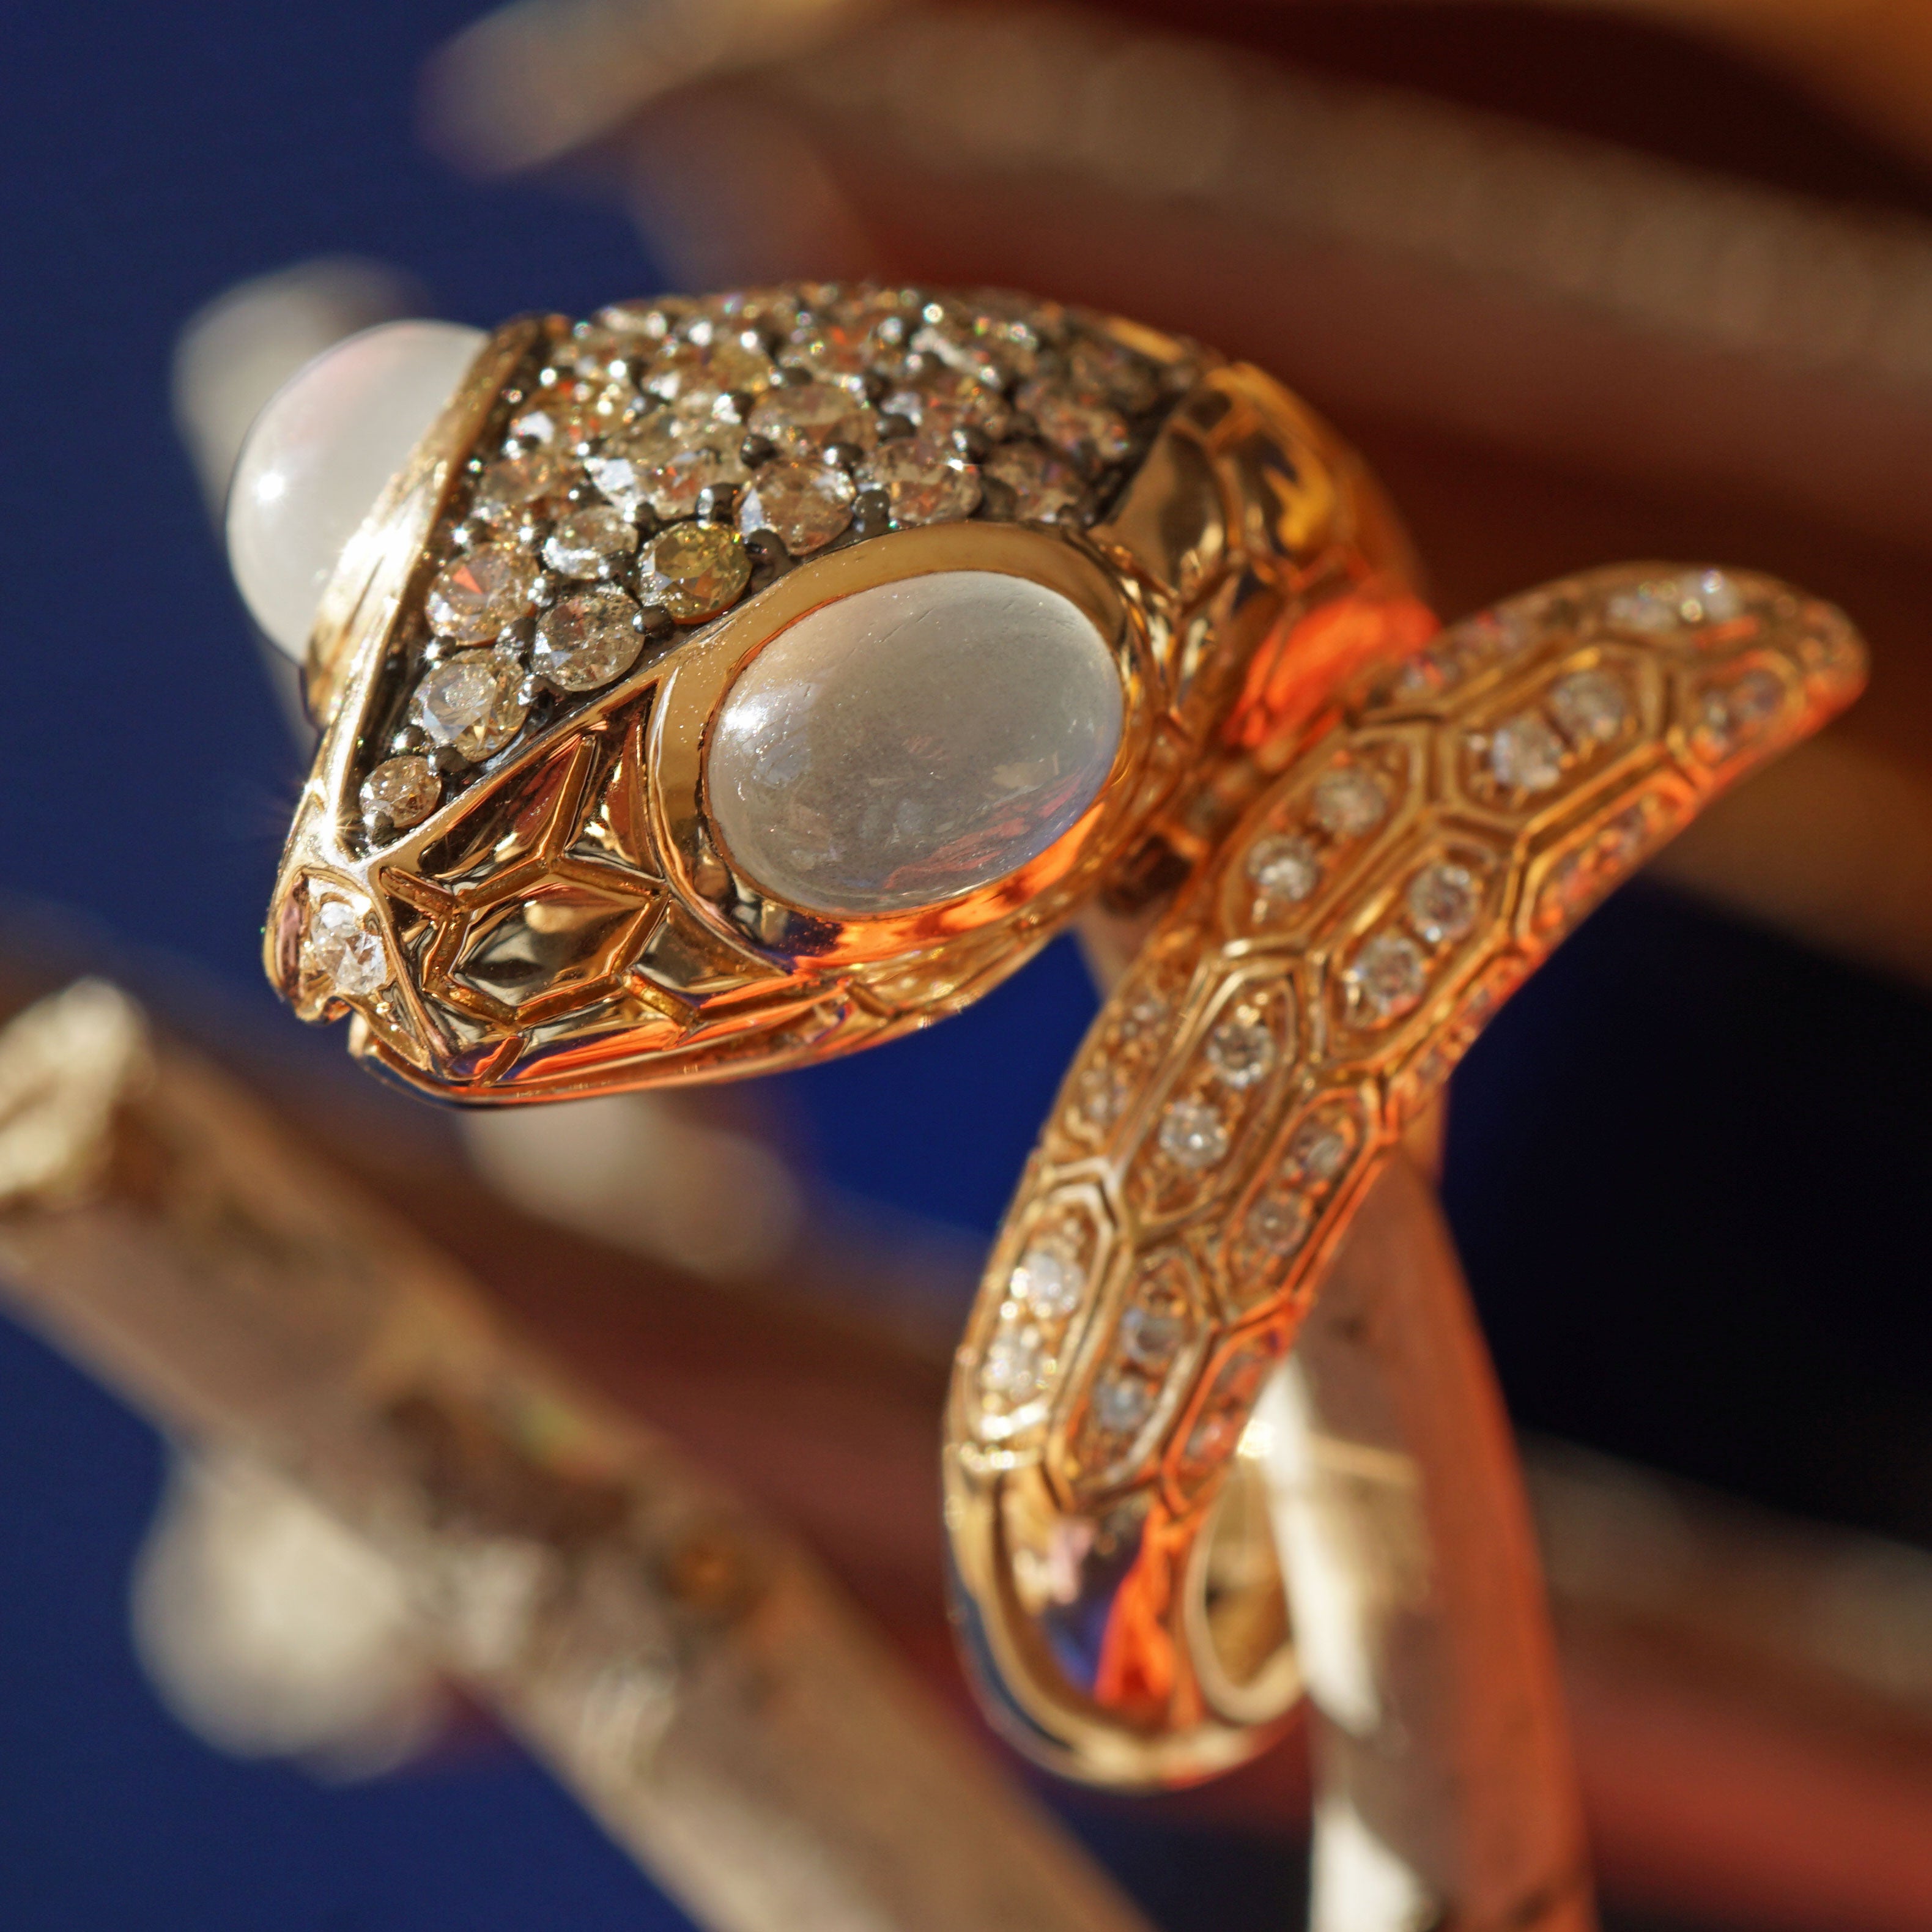 Schlange einzigartiger Mondstein-Diamantring, 750er Gold,

Roségold-Juwelier-Kunstring in Form einer 